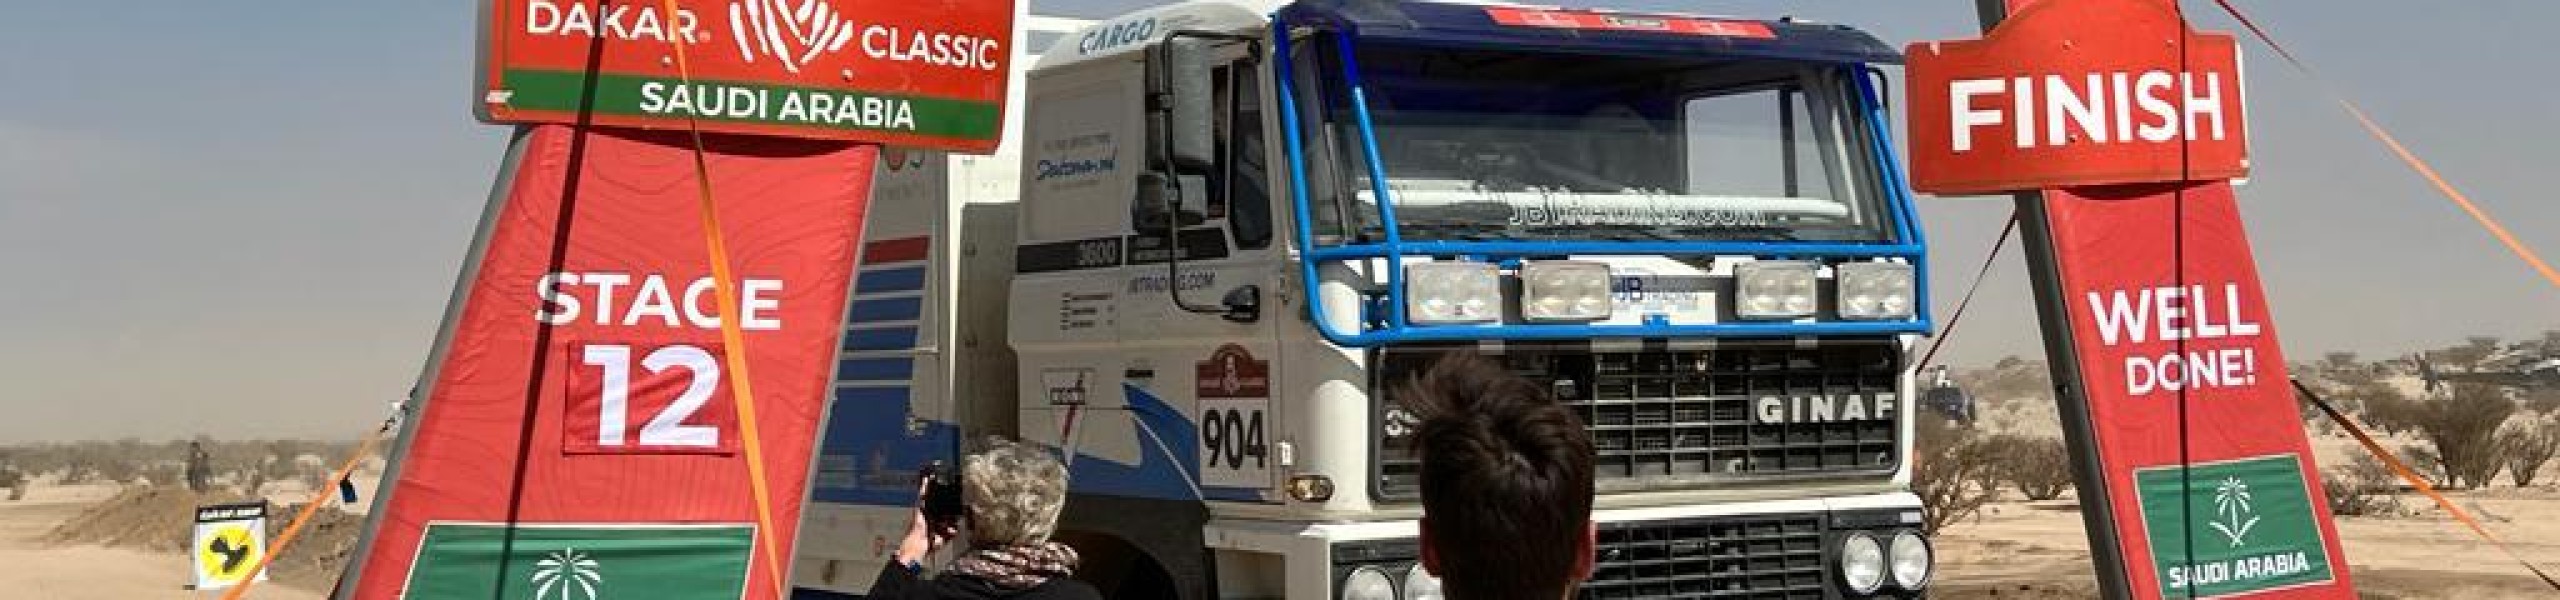 Team JB Trading heeft de Dakar Classic rally van 2022 uitgereden.